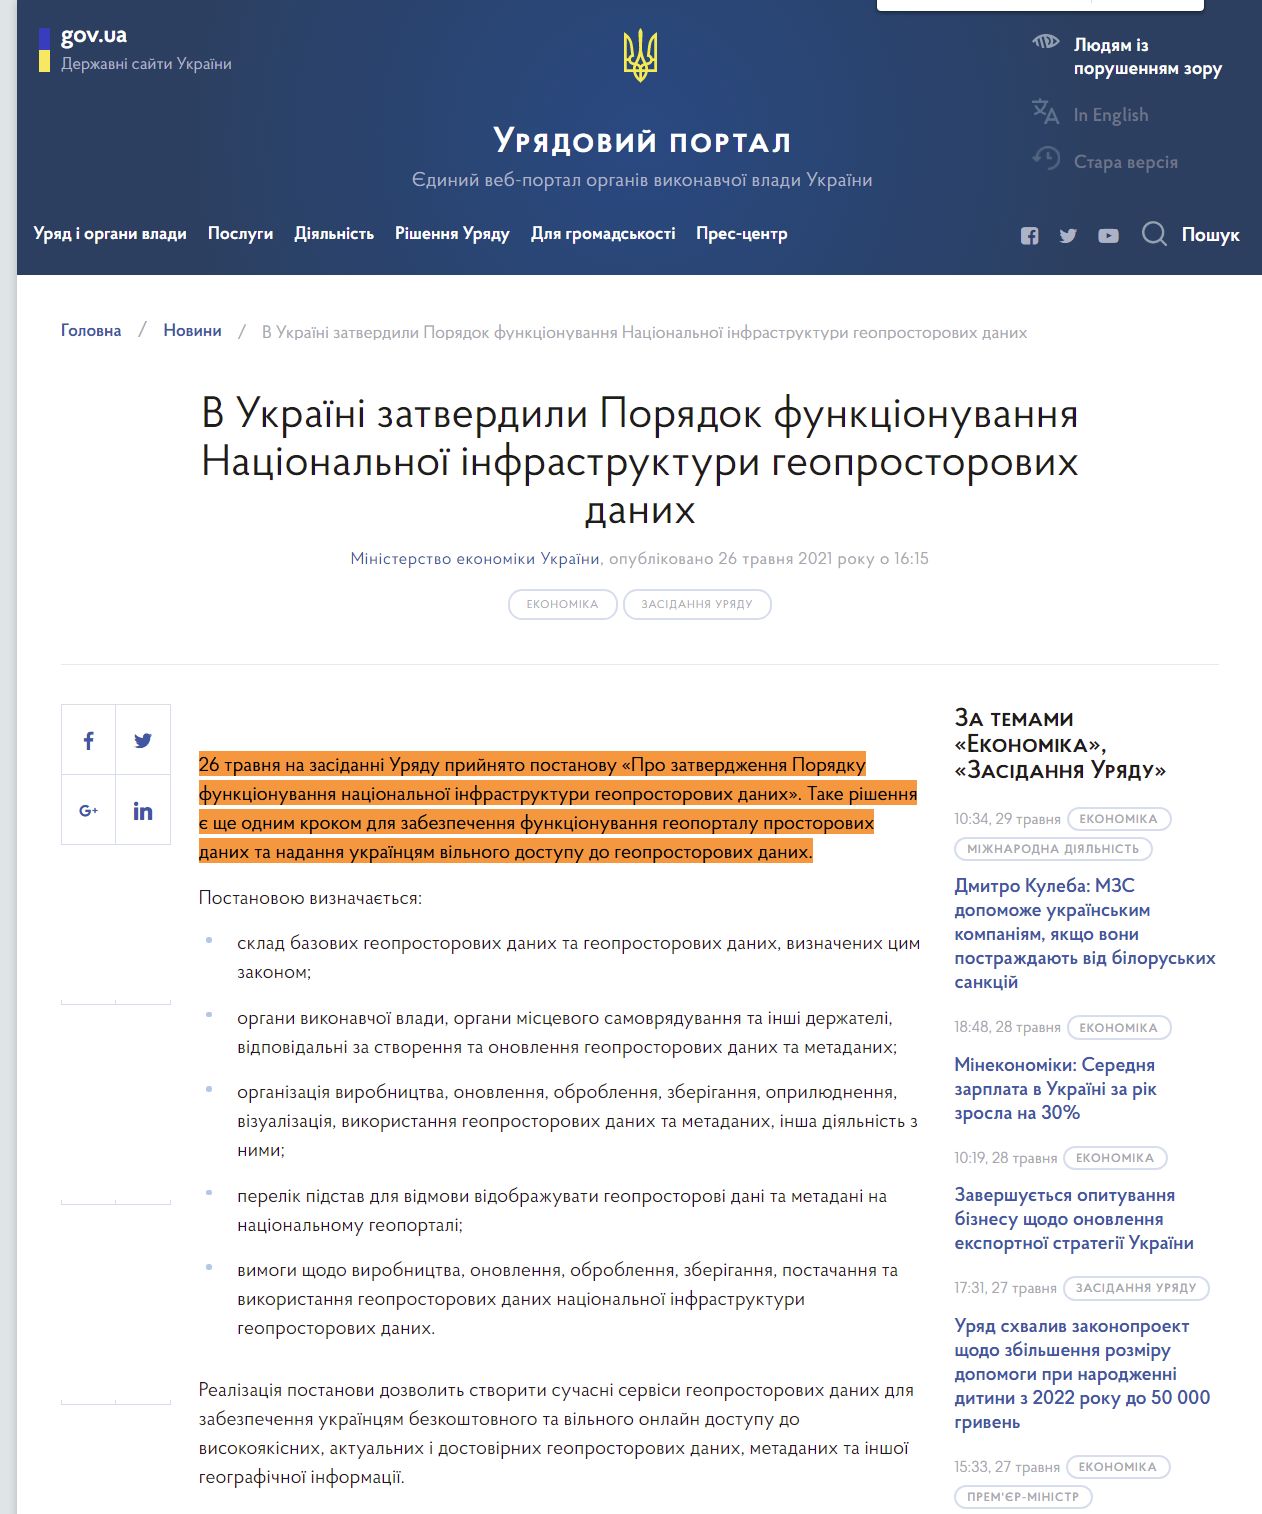 https://www.kmu.gov.ua/news/v-ukrayini-zatverdili-poryadok-funkcionuvannya-nacionalnoyi-infrastrukturi-geoprostorovih-danih